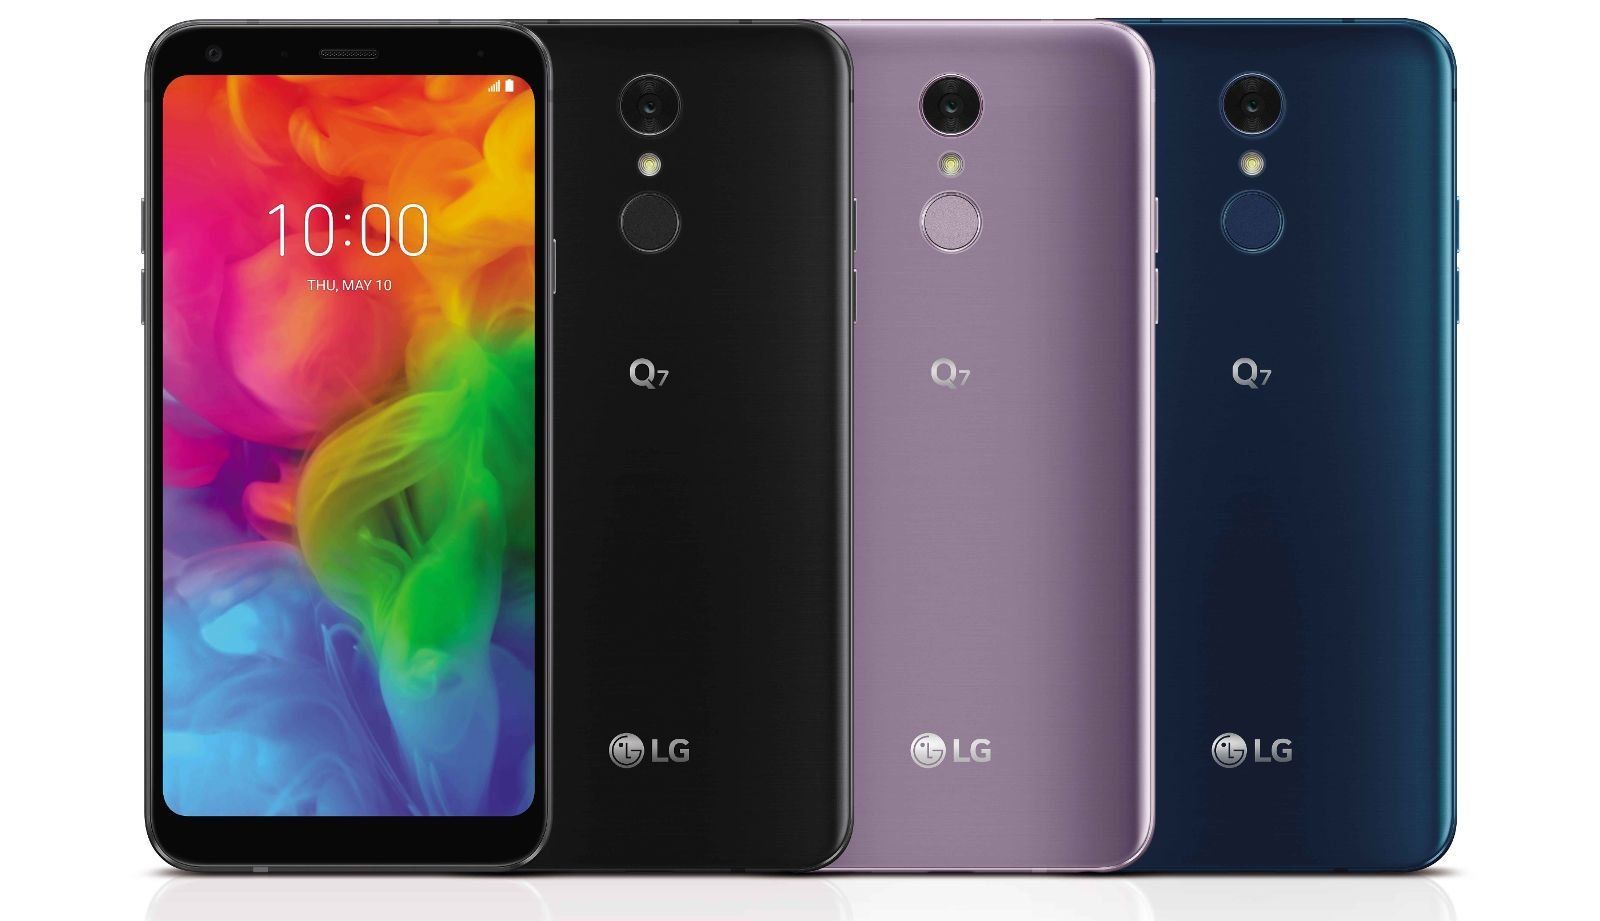 Avantages et inconvénients des smartphones LG Q7 + et Q7 - nouveaux produits en 2018